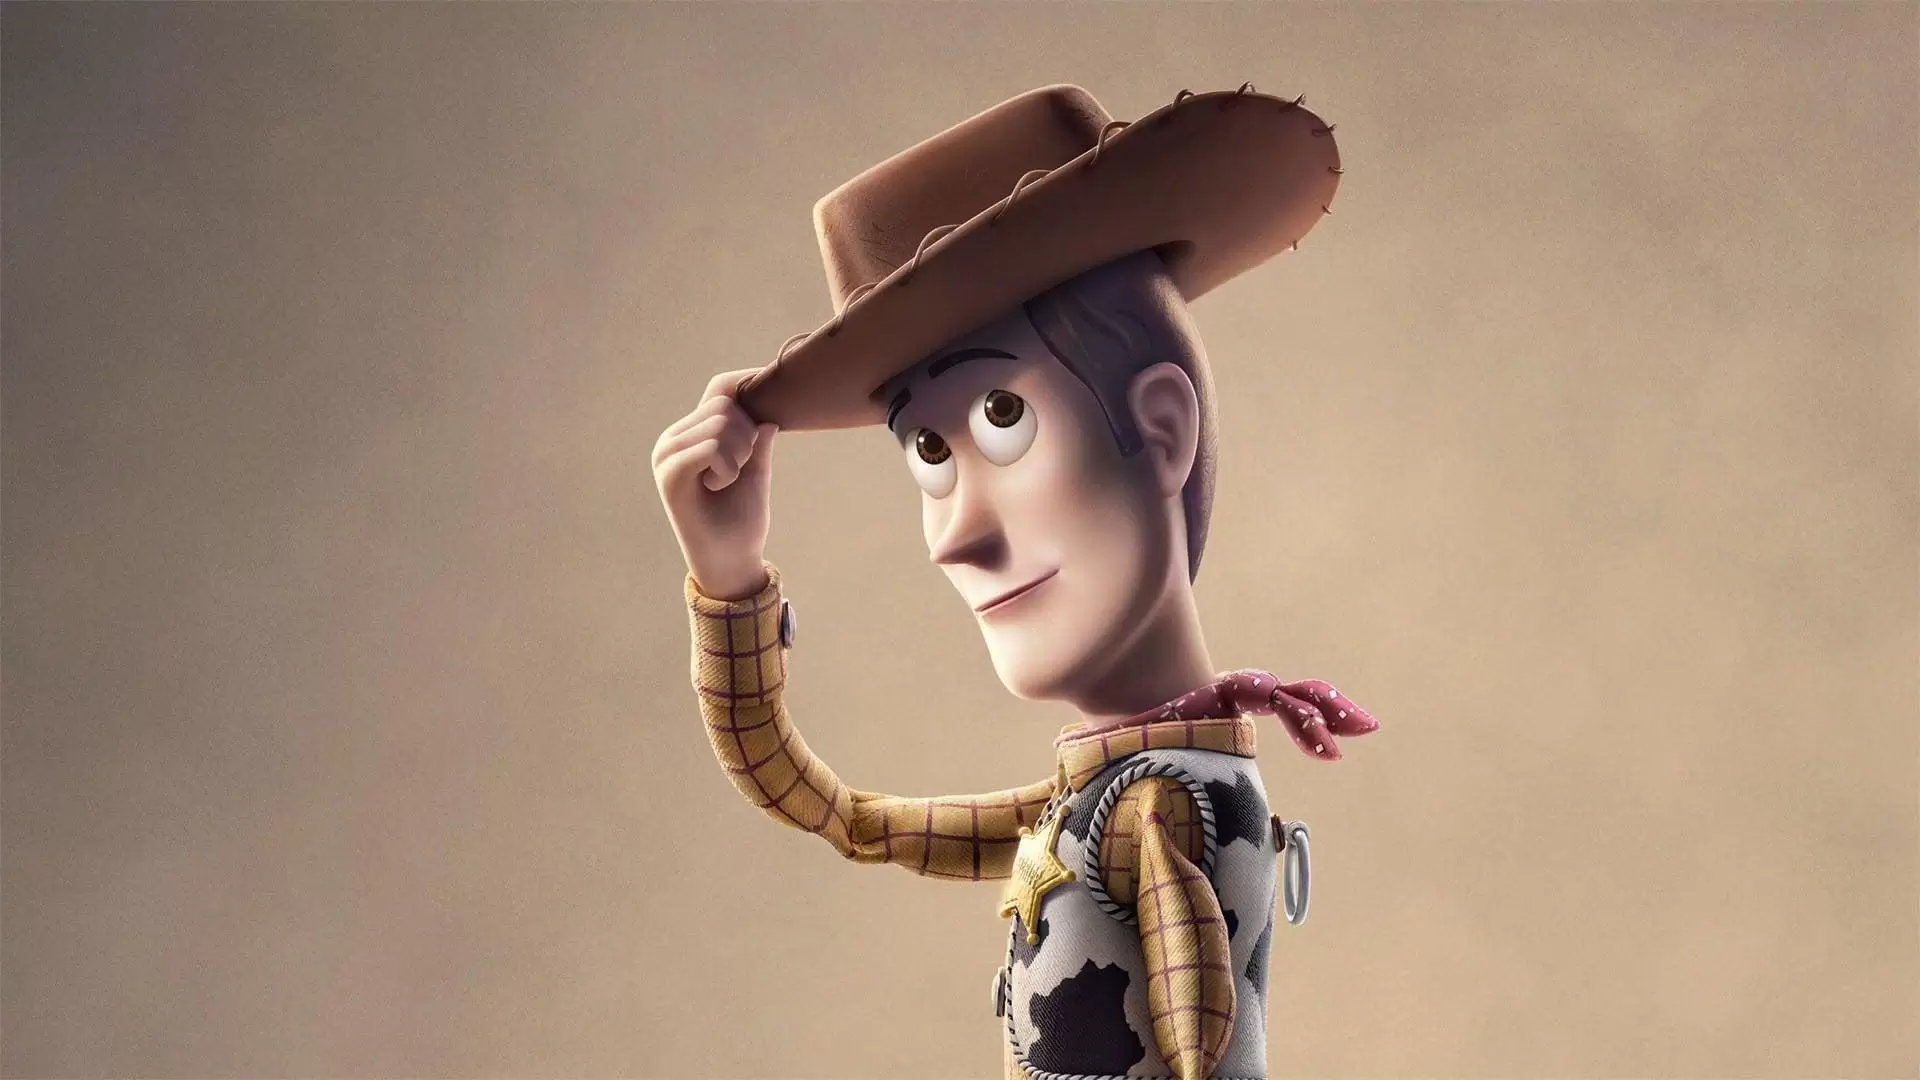 دانلود انیمیشن Toy Story 4 2019 (داستان اسباب بازی ۴) با زیرنویس فارسی و تماشای آنلاین